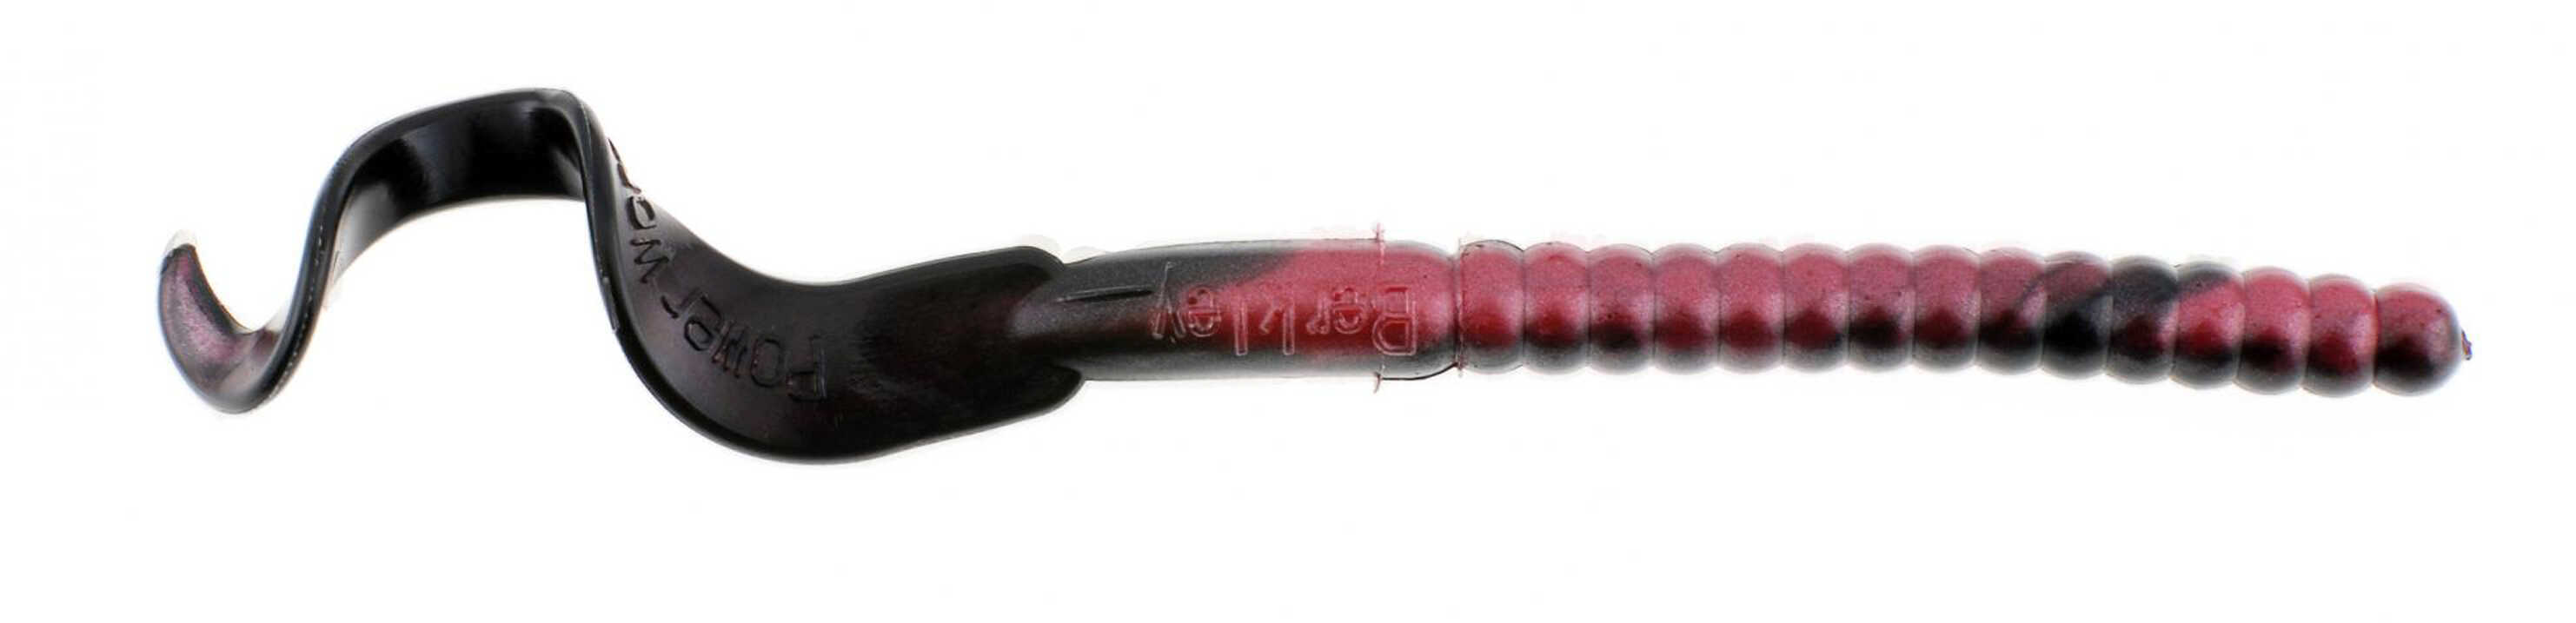 Berkley PowerBait Worm 7" Red Shad Md: 1307498